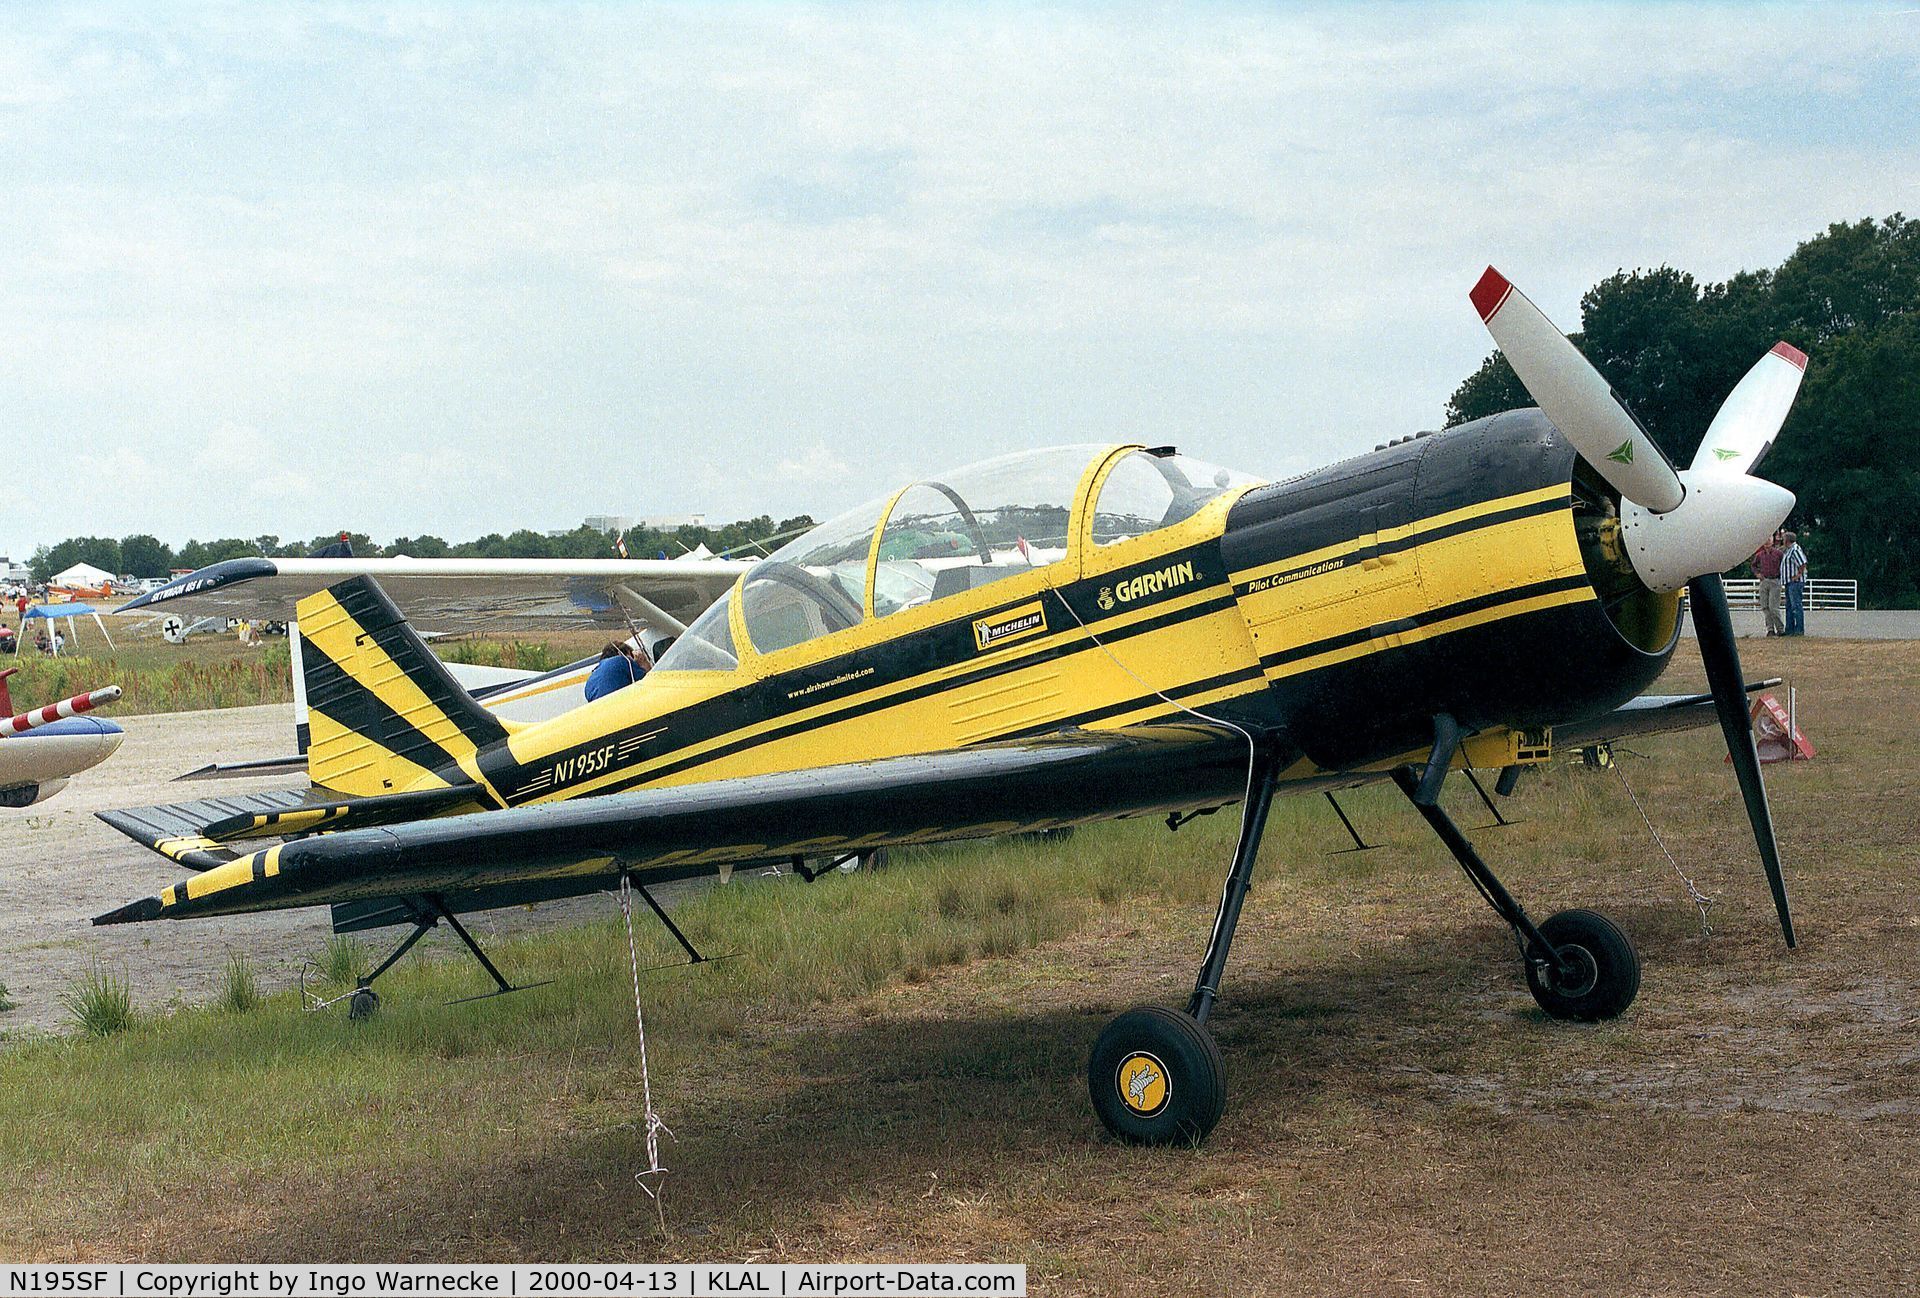 N195SF, 1995 Technoavia SP-95 C/N 1492050100, Techno Avia SP-95 at 2000 Sun 'n Fun, Lakeland FL